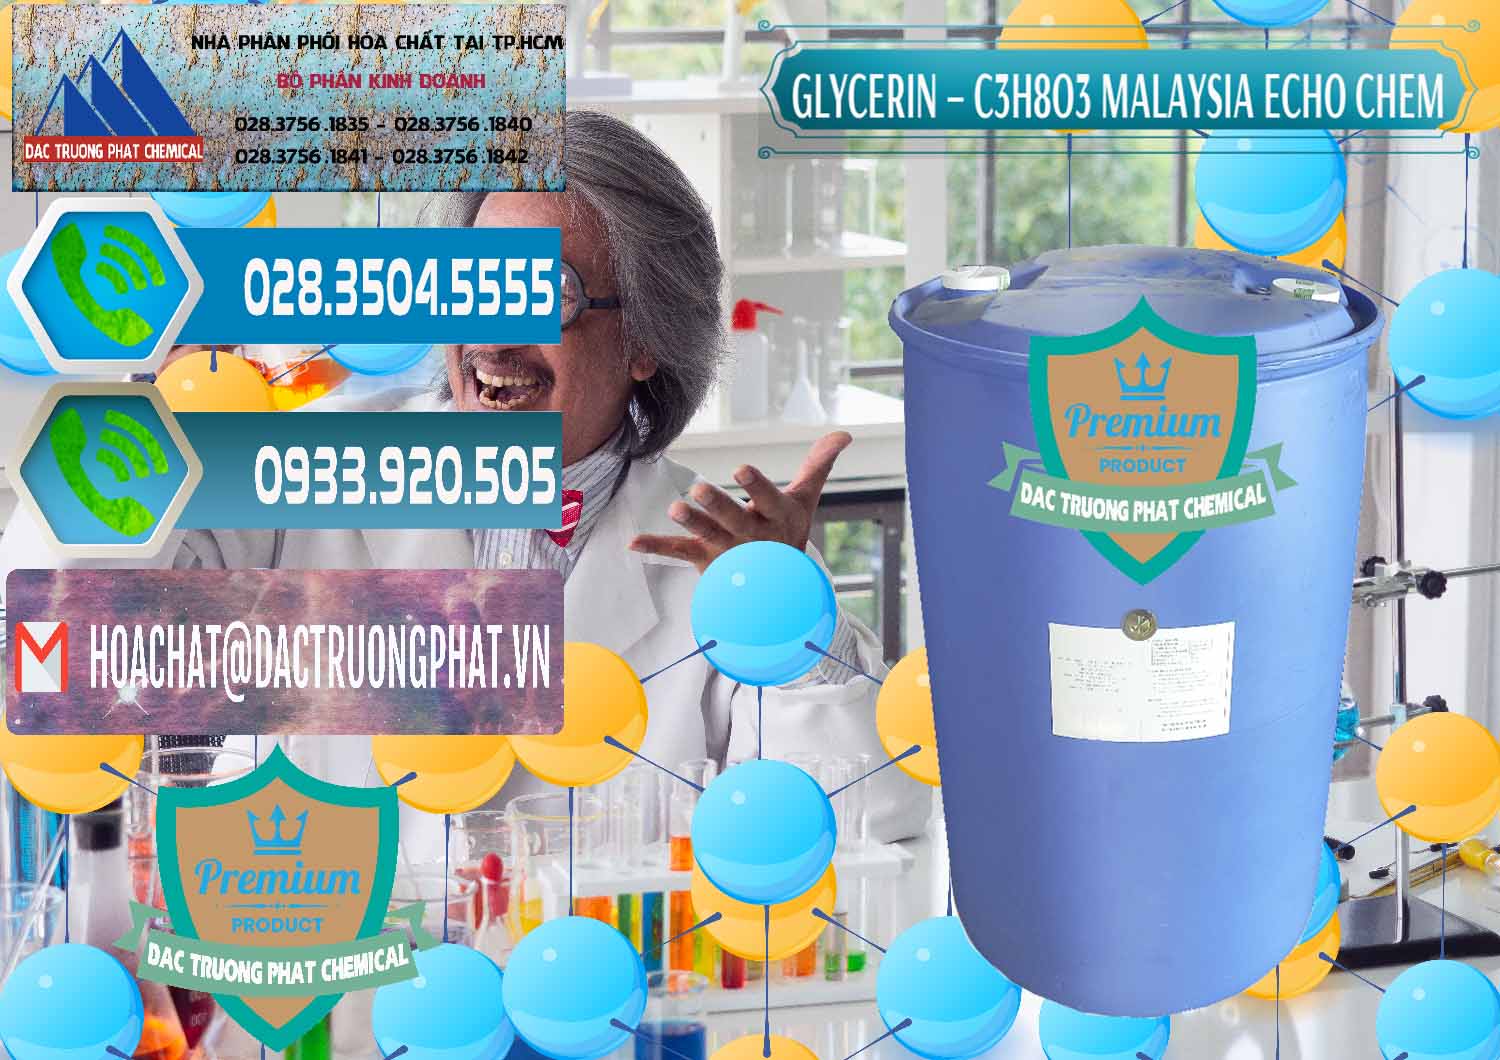 Cty bán _ cung cấp Glycerin – C3H8O3 99.7% Echo Chem Malaysia - 0273 - Nơi bán ( cung cấp ) hóa chất tại TP.HCM - congtyhoachat.net